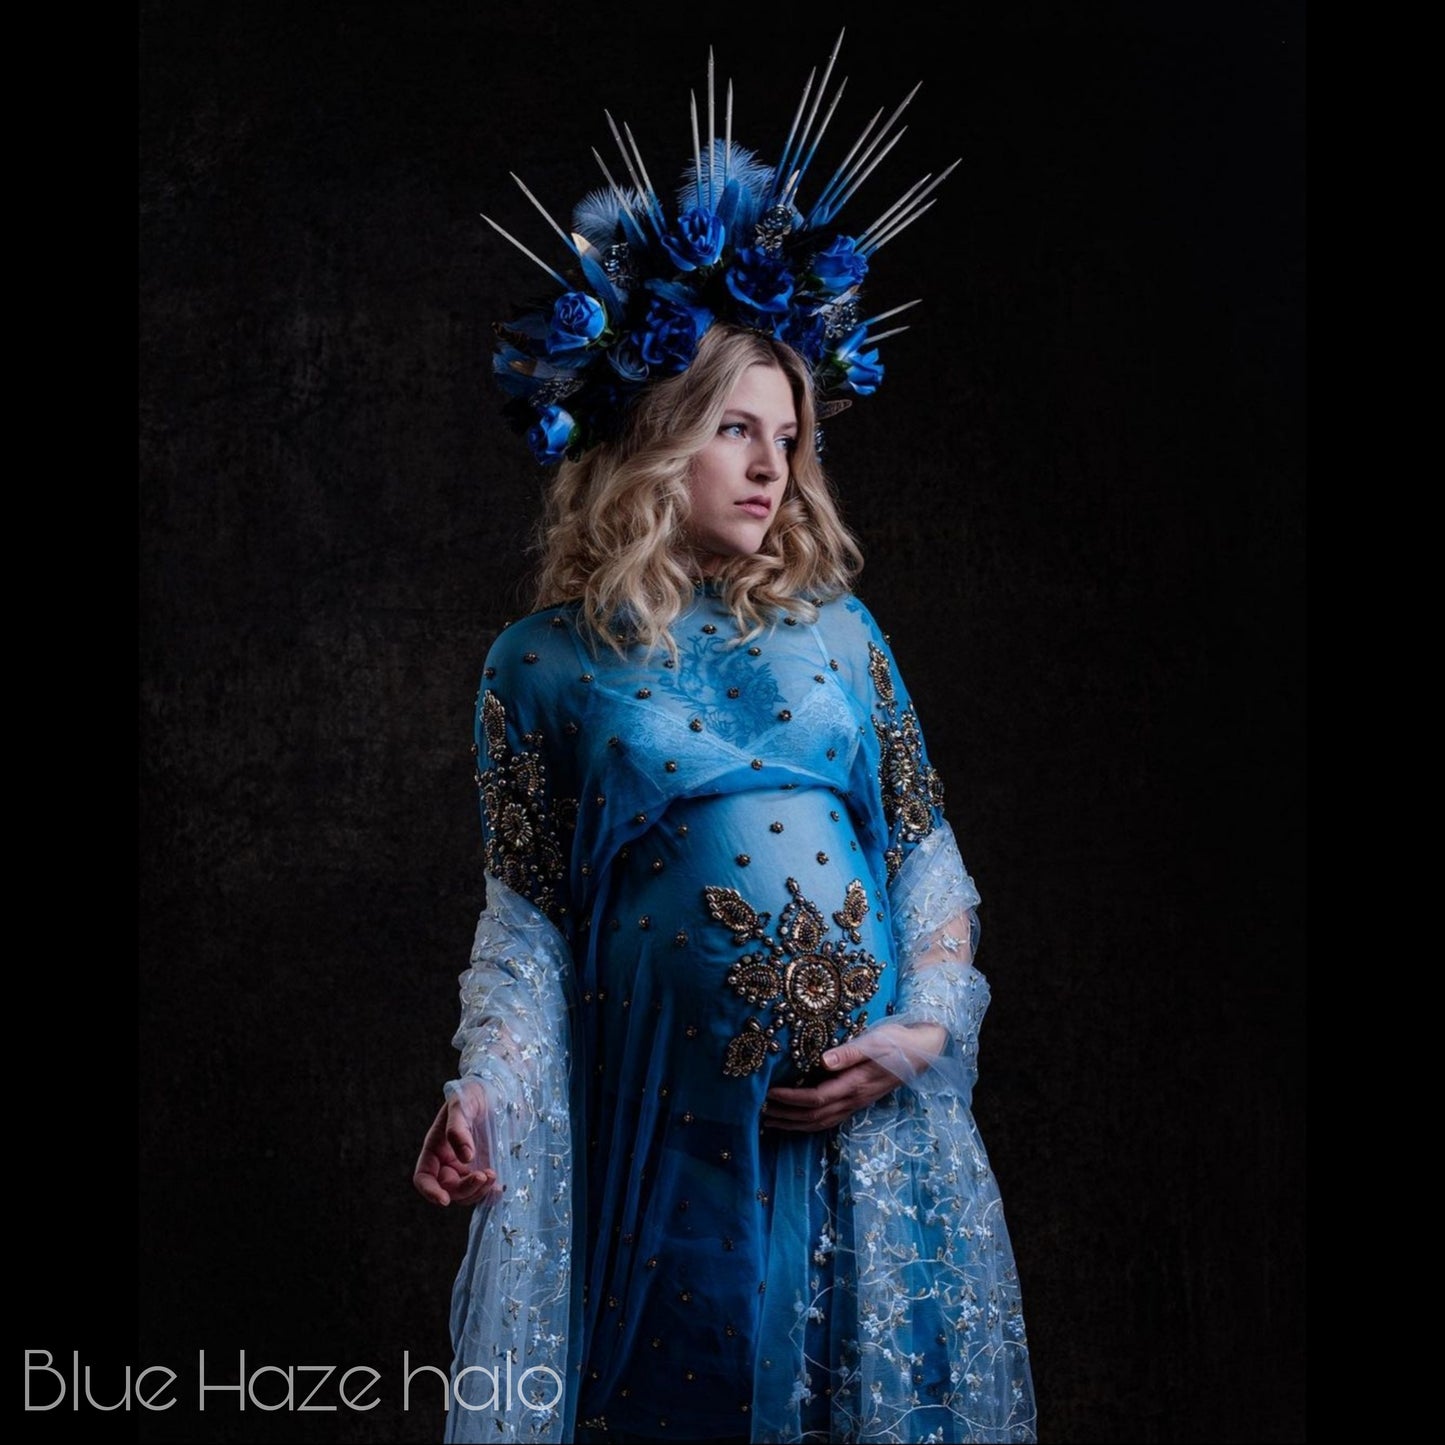 The Blue Haze flower headdress